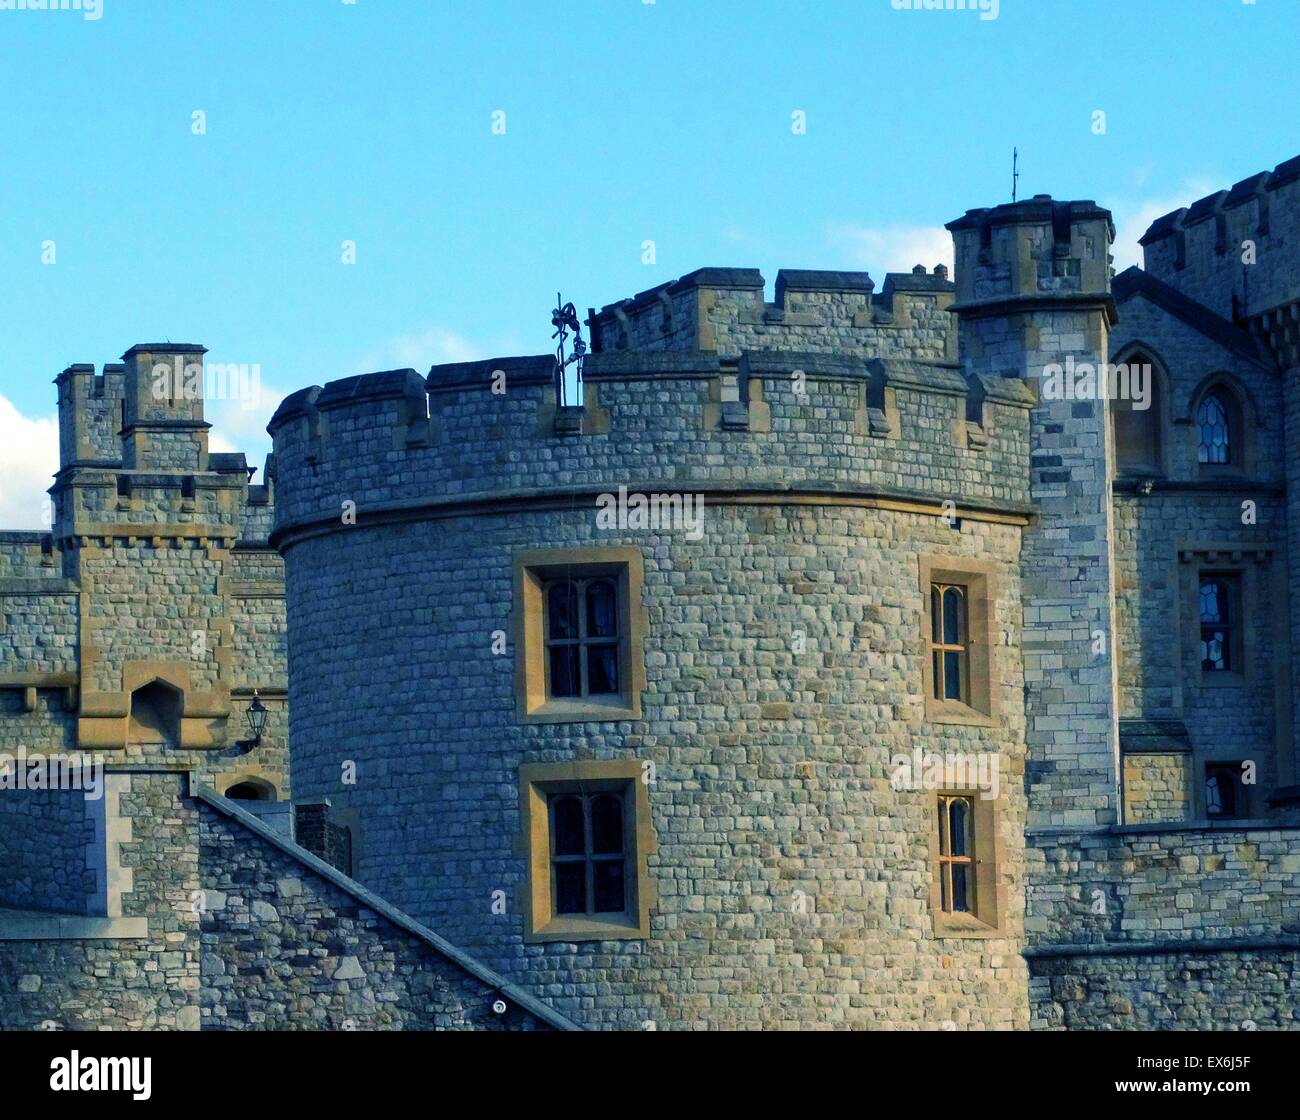 Farbfoto des Tower of London, eine historische Burg befindet sich am nördlichen Ufer der Themse im Zentrum von London. Der Bau begann im 11. Jahrhundert. Datierte 2014 Stockfoto